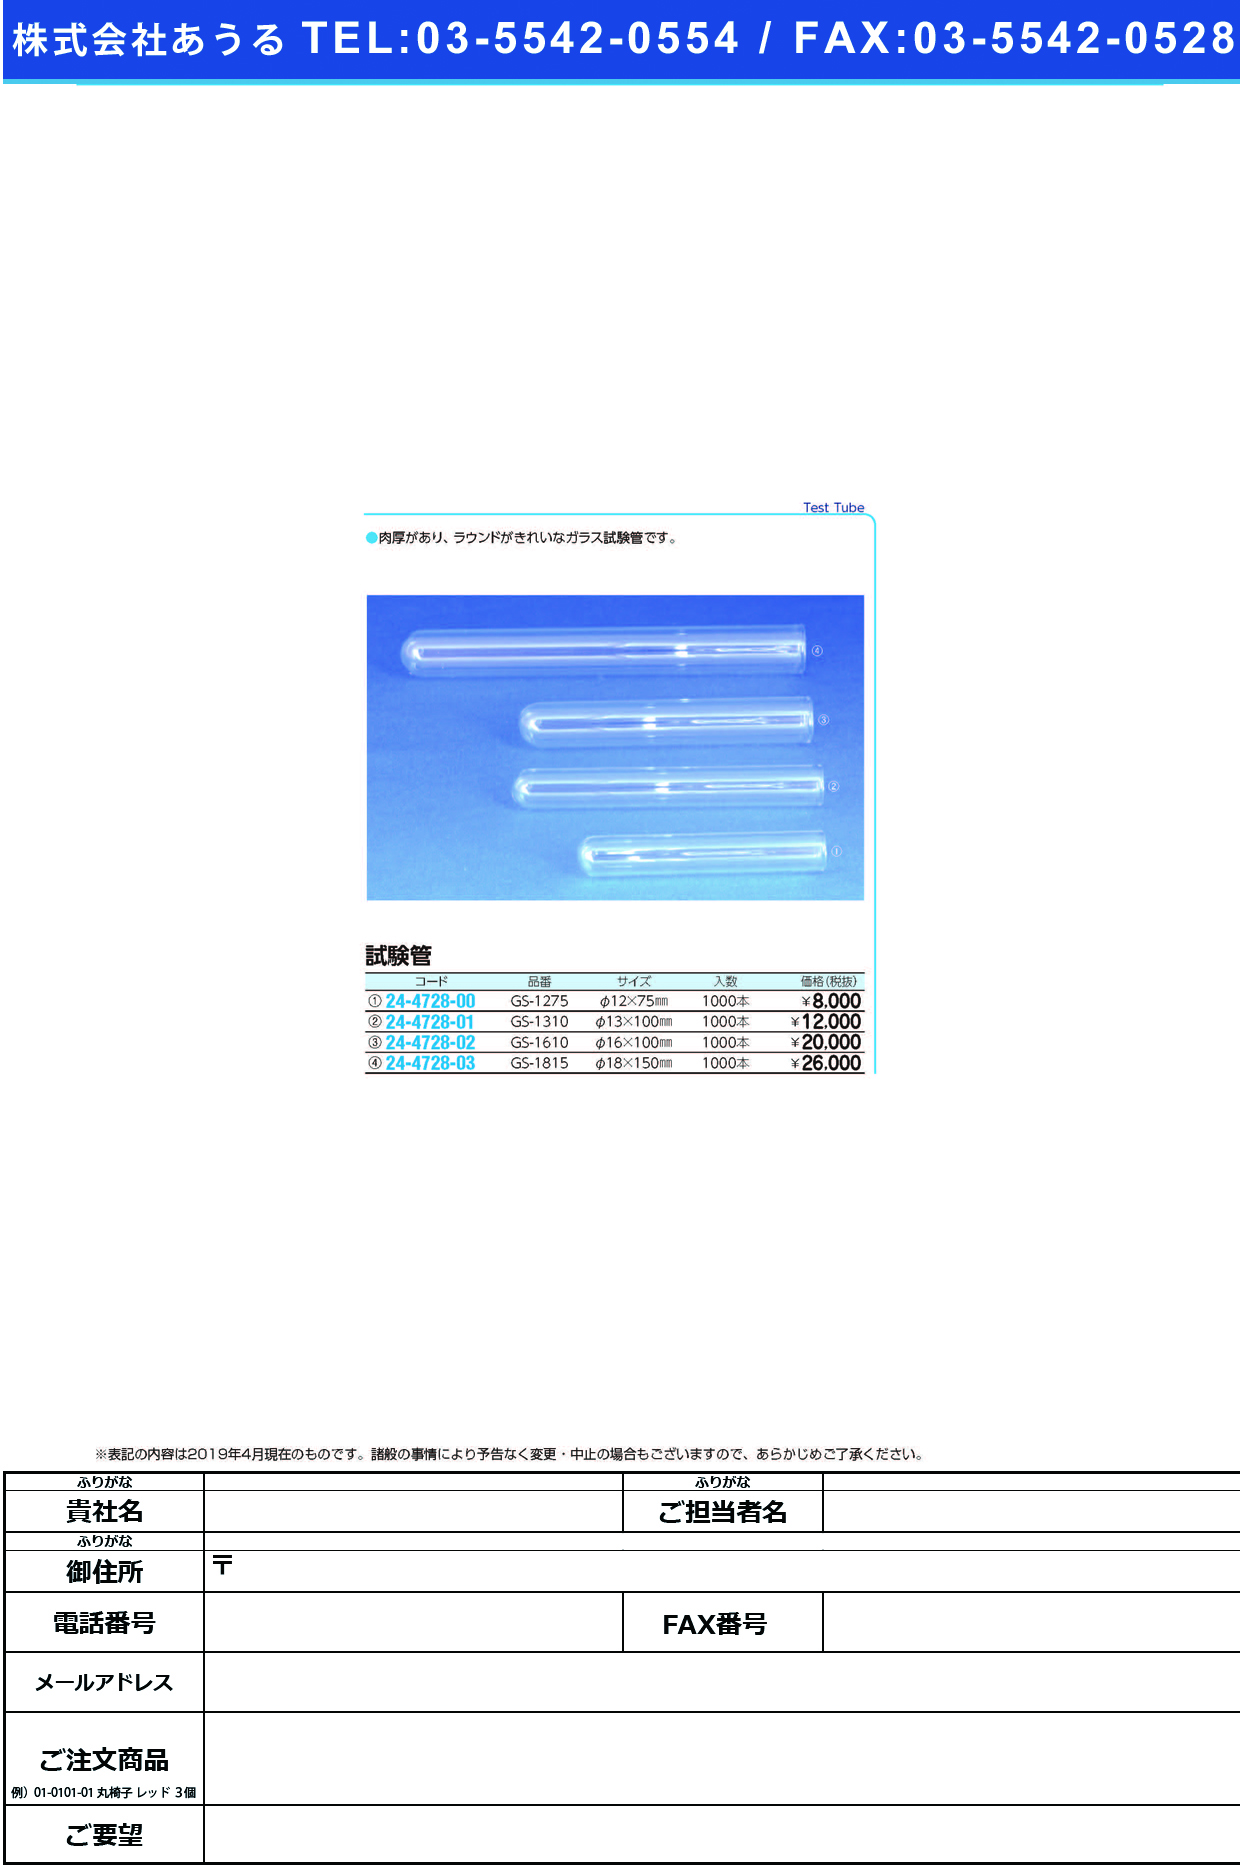 (24-4728-00)試験管（ガラス製） GS-1275(1000ﾎﾝ) ｼｹﾝｶﾝ(ｶﾞﾗｽｾｲ)【1箱単位】【2019年カタログ商品】